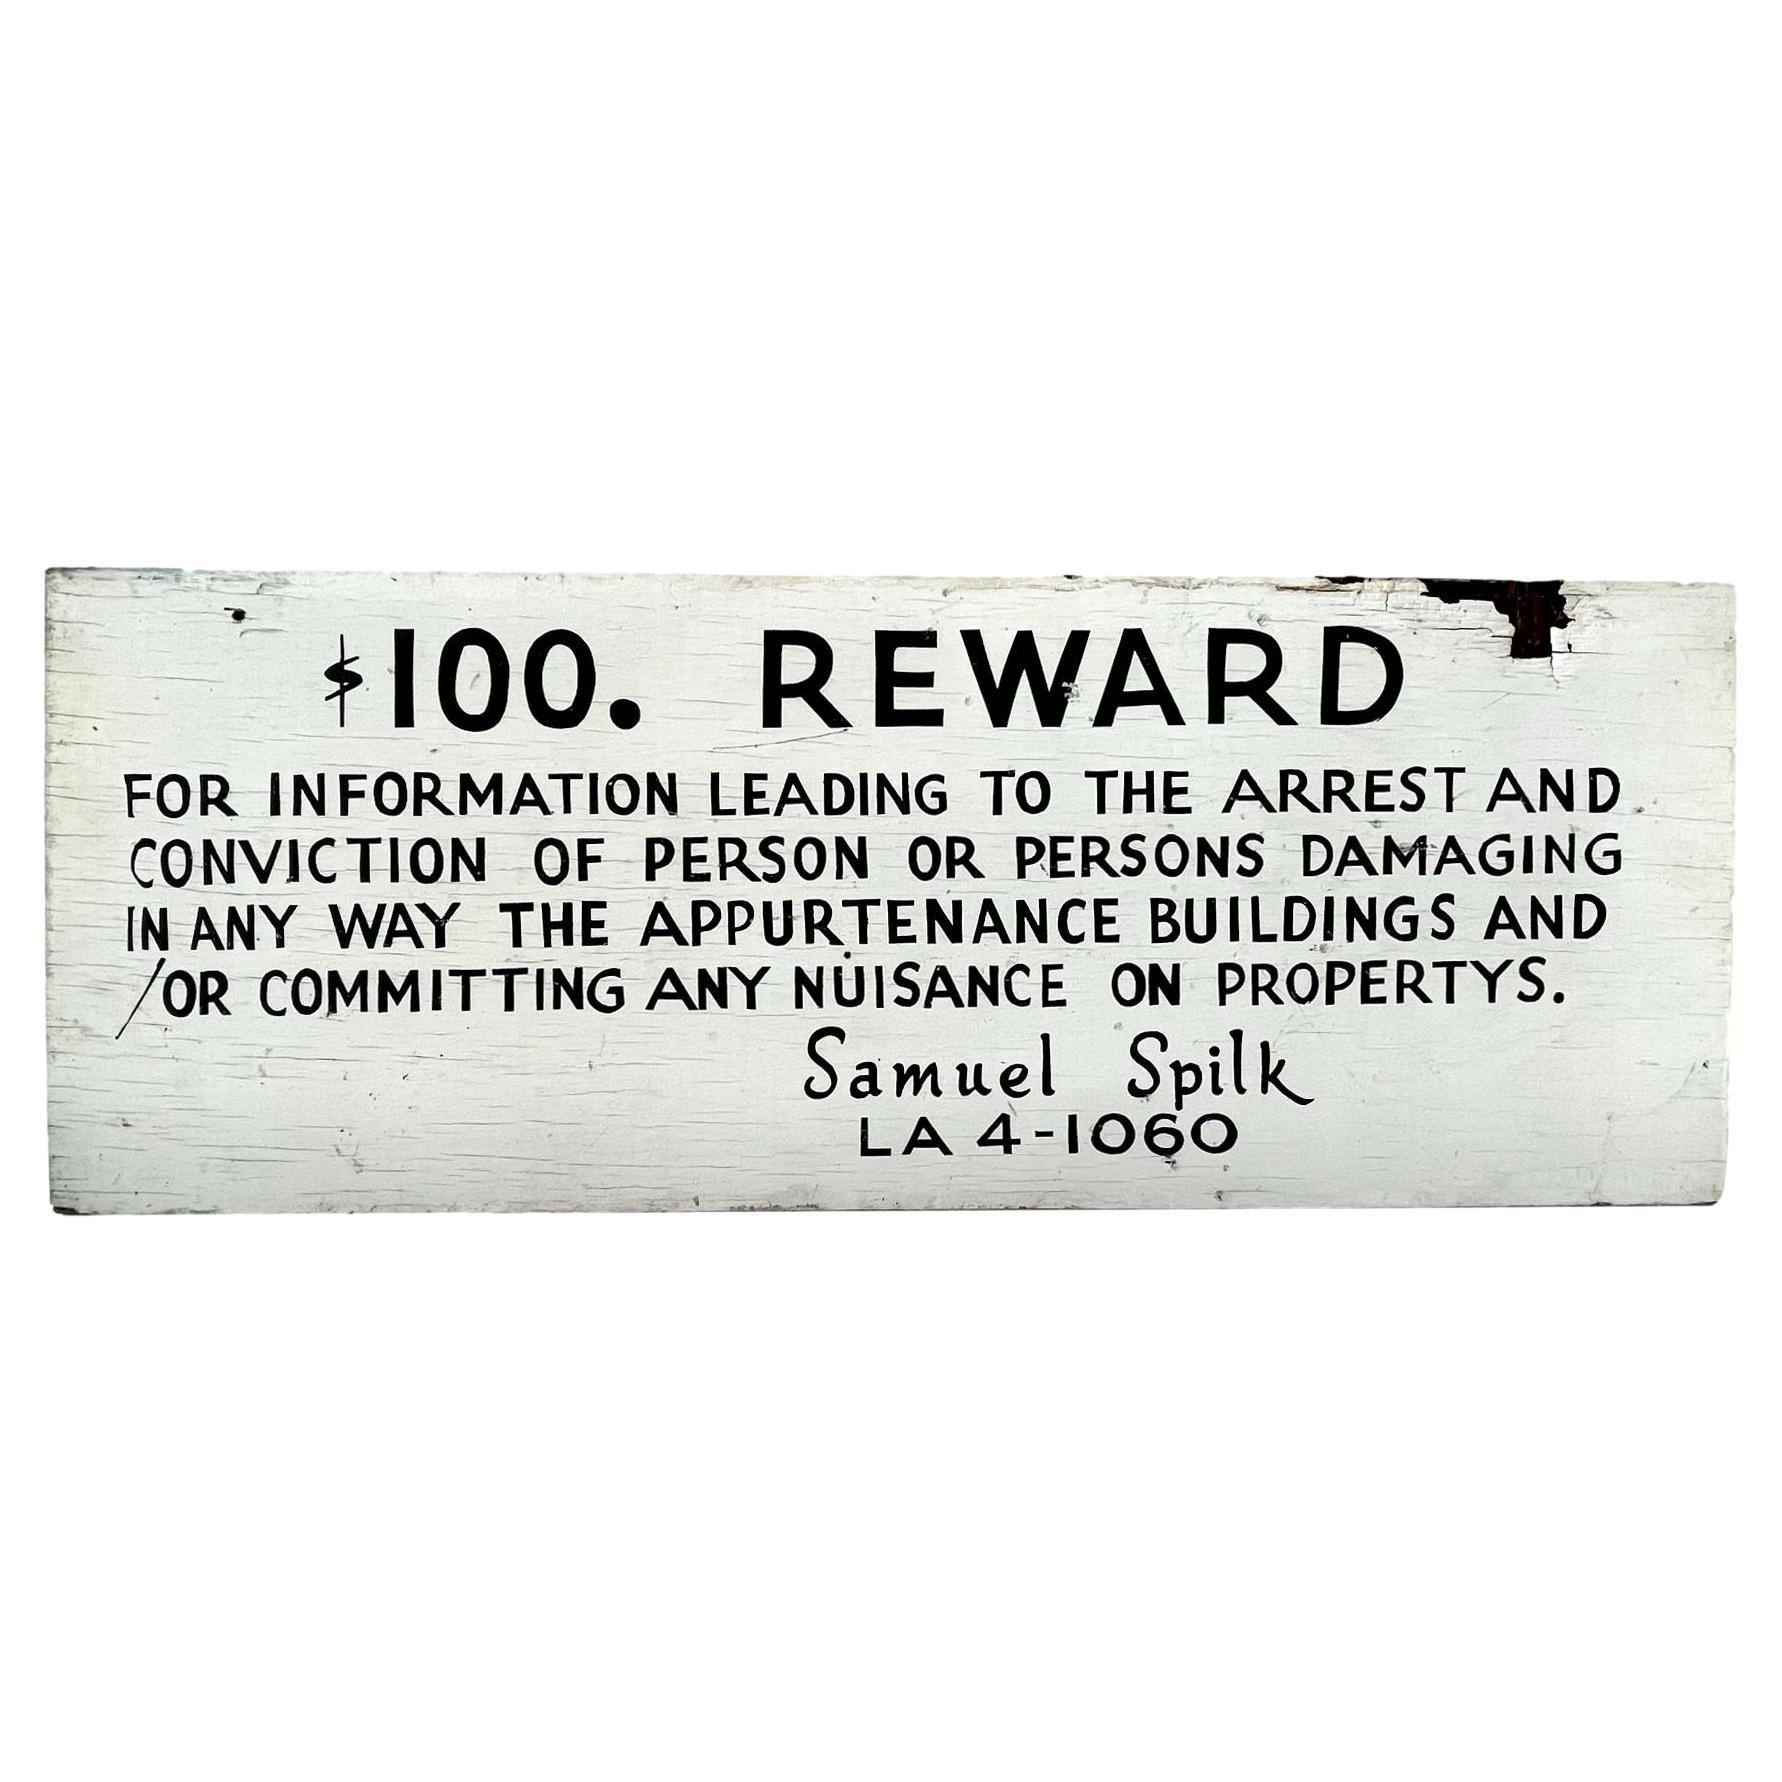 Panneau en bois peint à la main 100 $ REWARD, Los Angeles, années 1940 